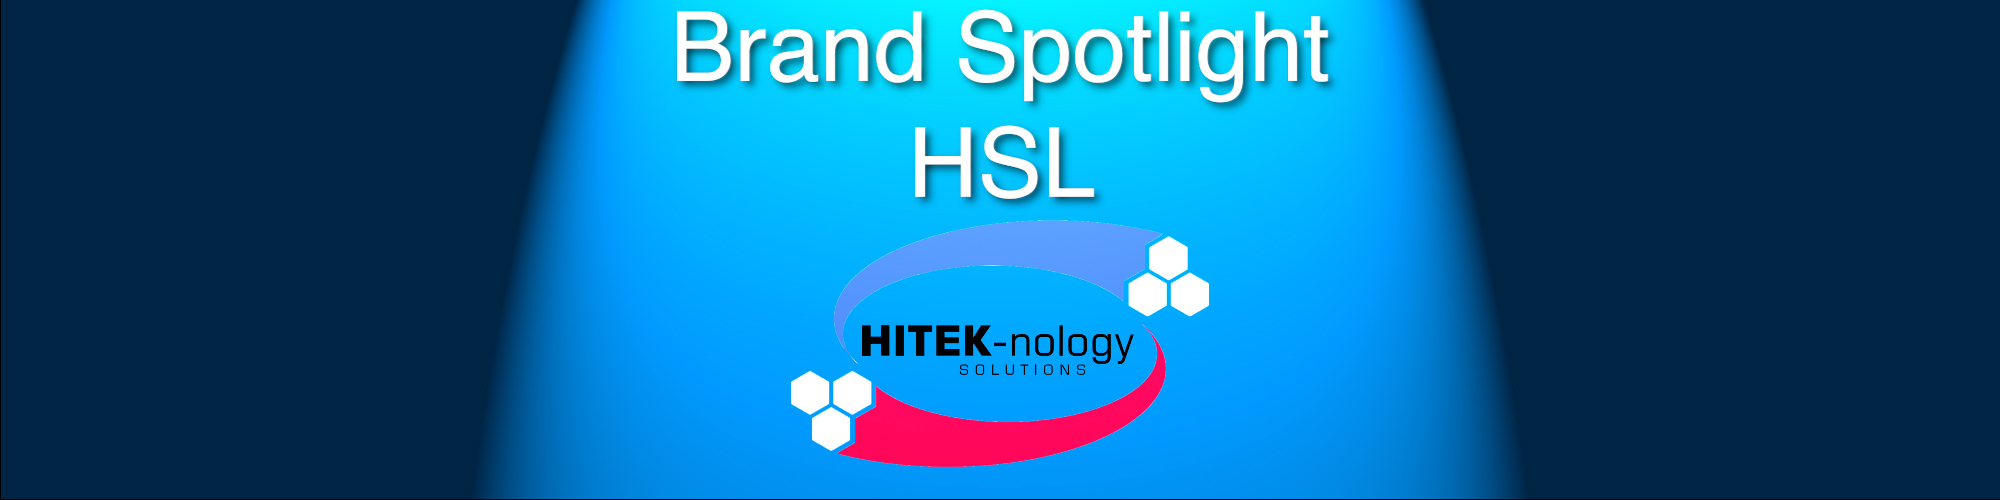 Brand spot HSL